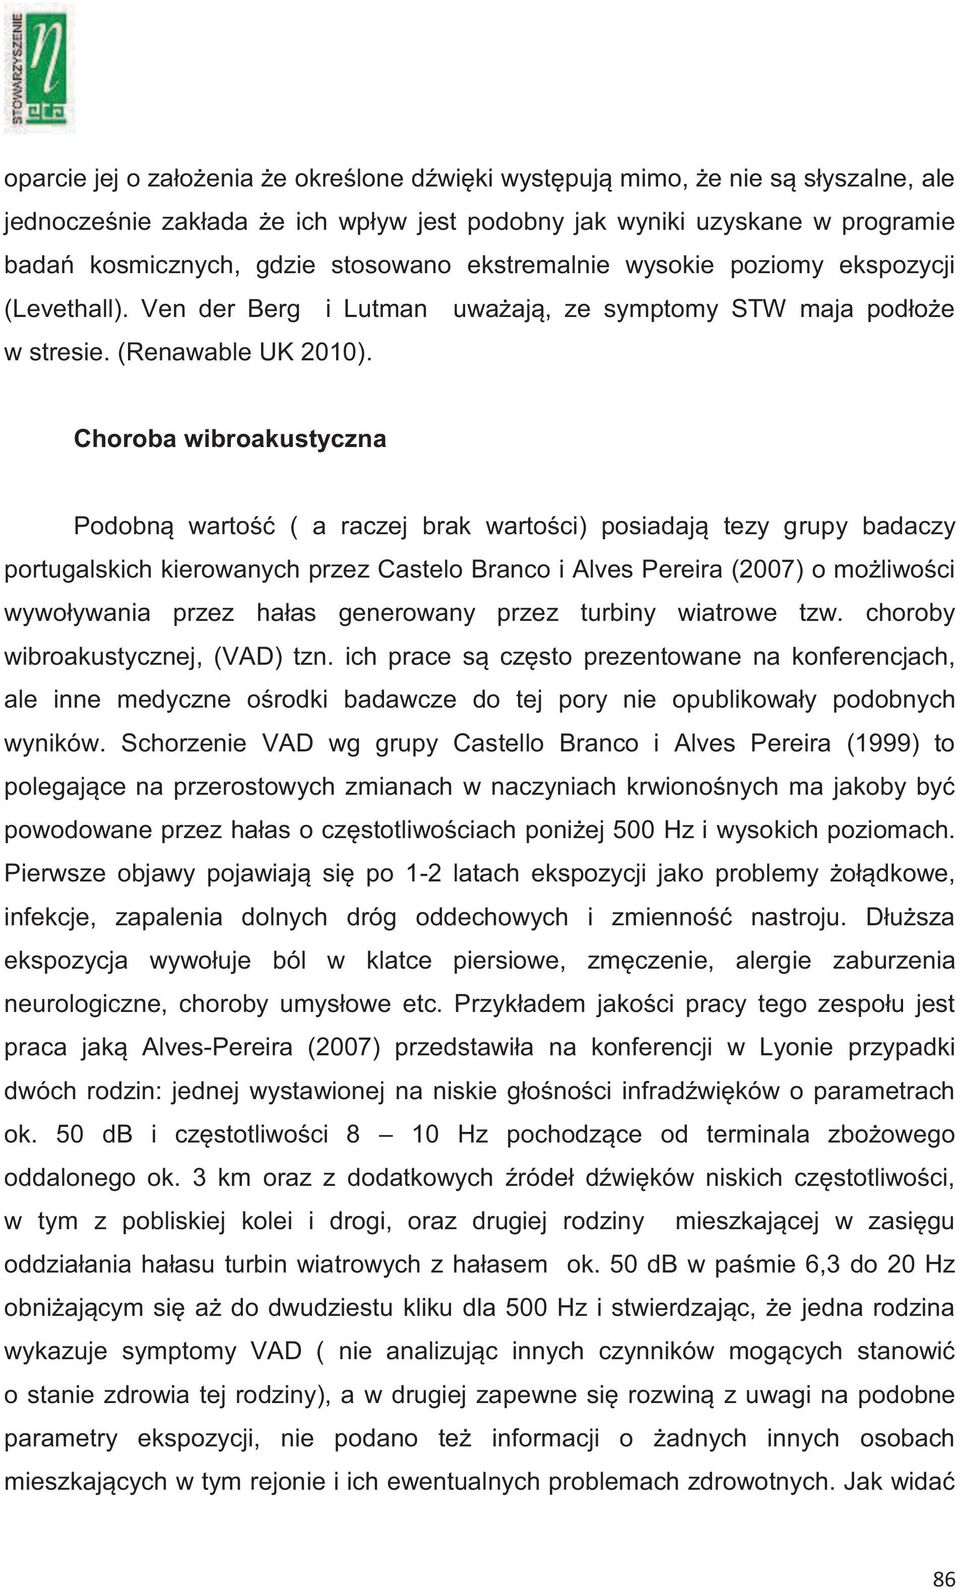 Choroba wibroakustyczna Podobną wartość ( a raczej brak wartości) posiadają tezy grupy badaczy portugalskich kierowanych przez Castelo Branco i Alves Pereira (2007) o możliwości wywoływania przez